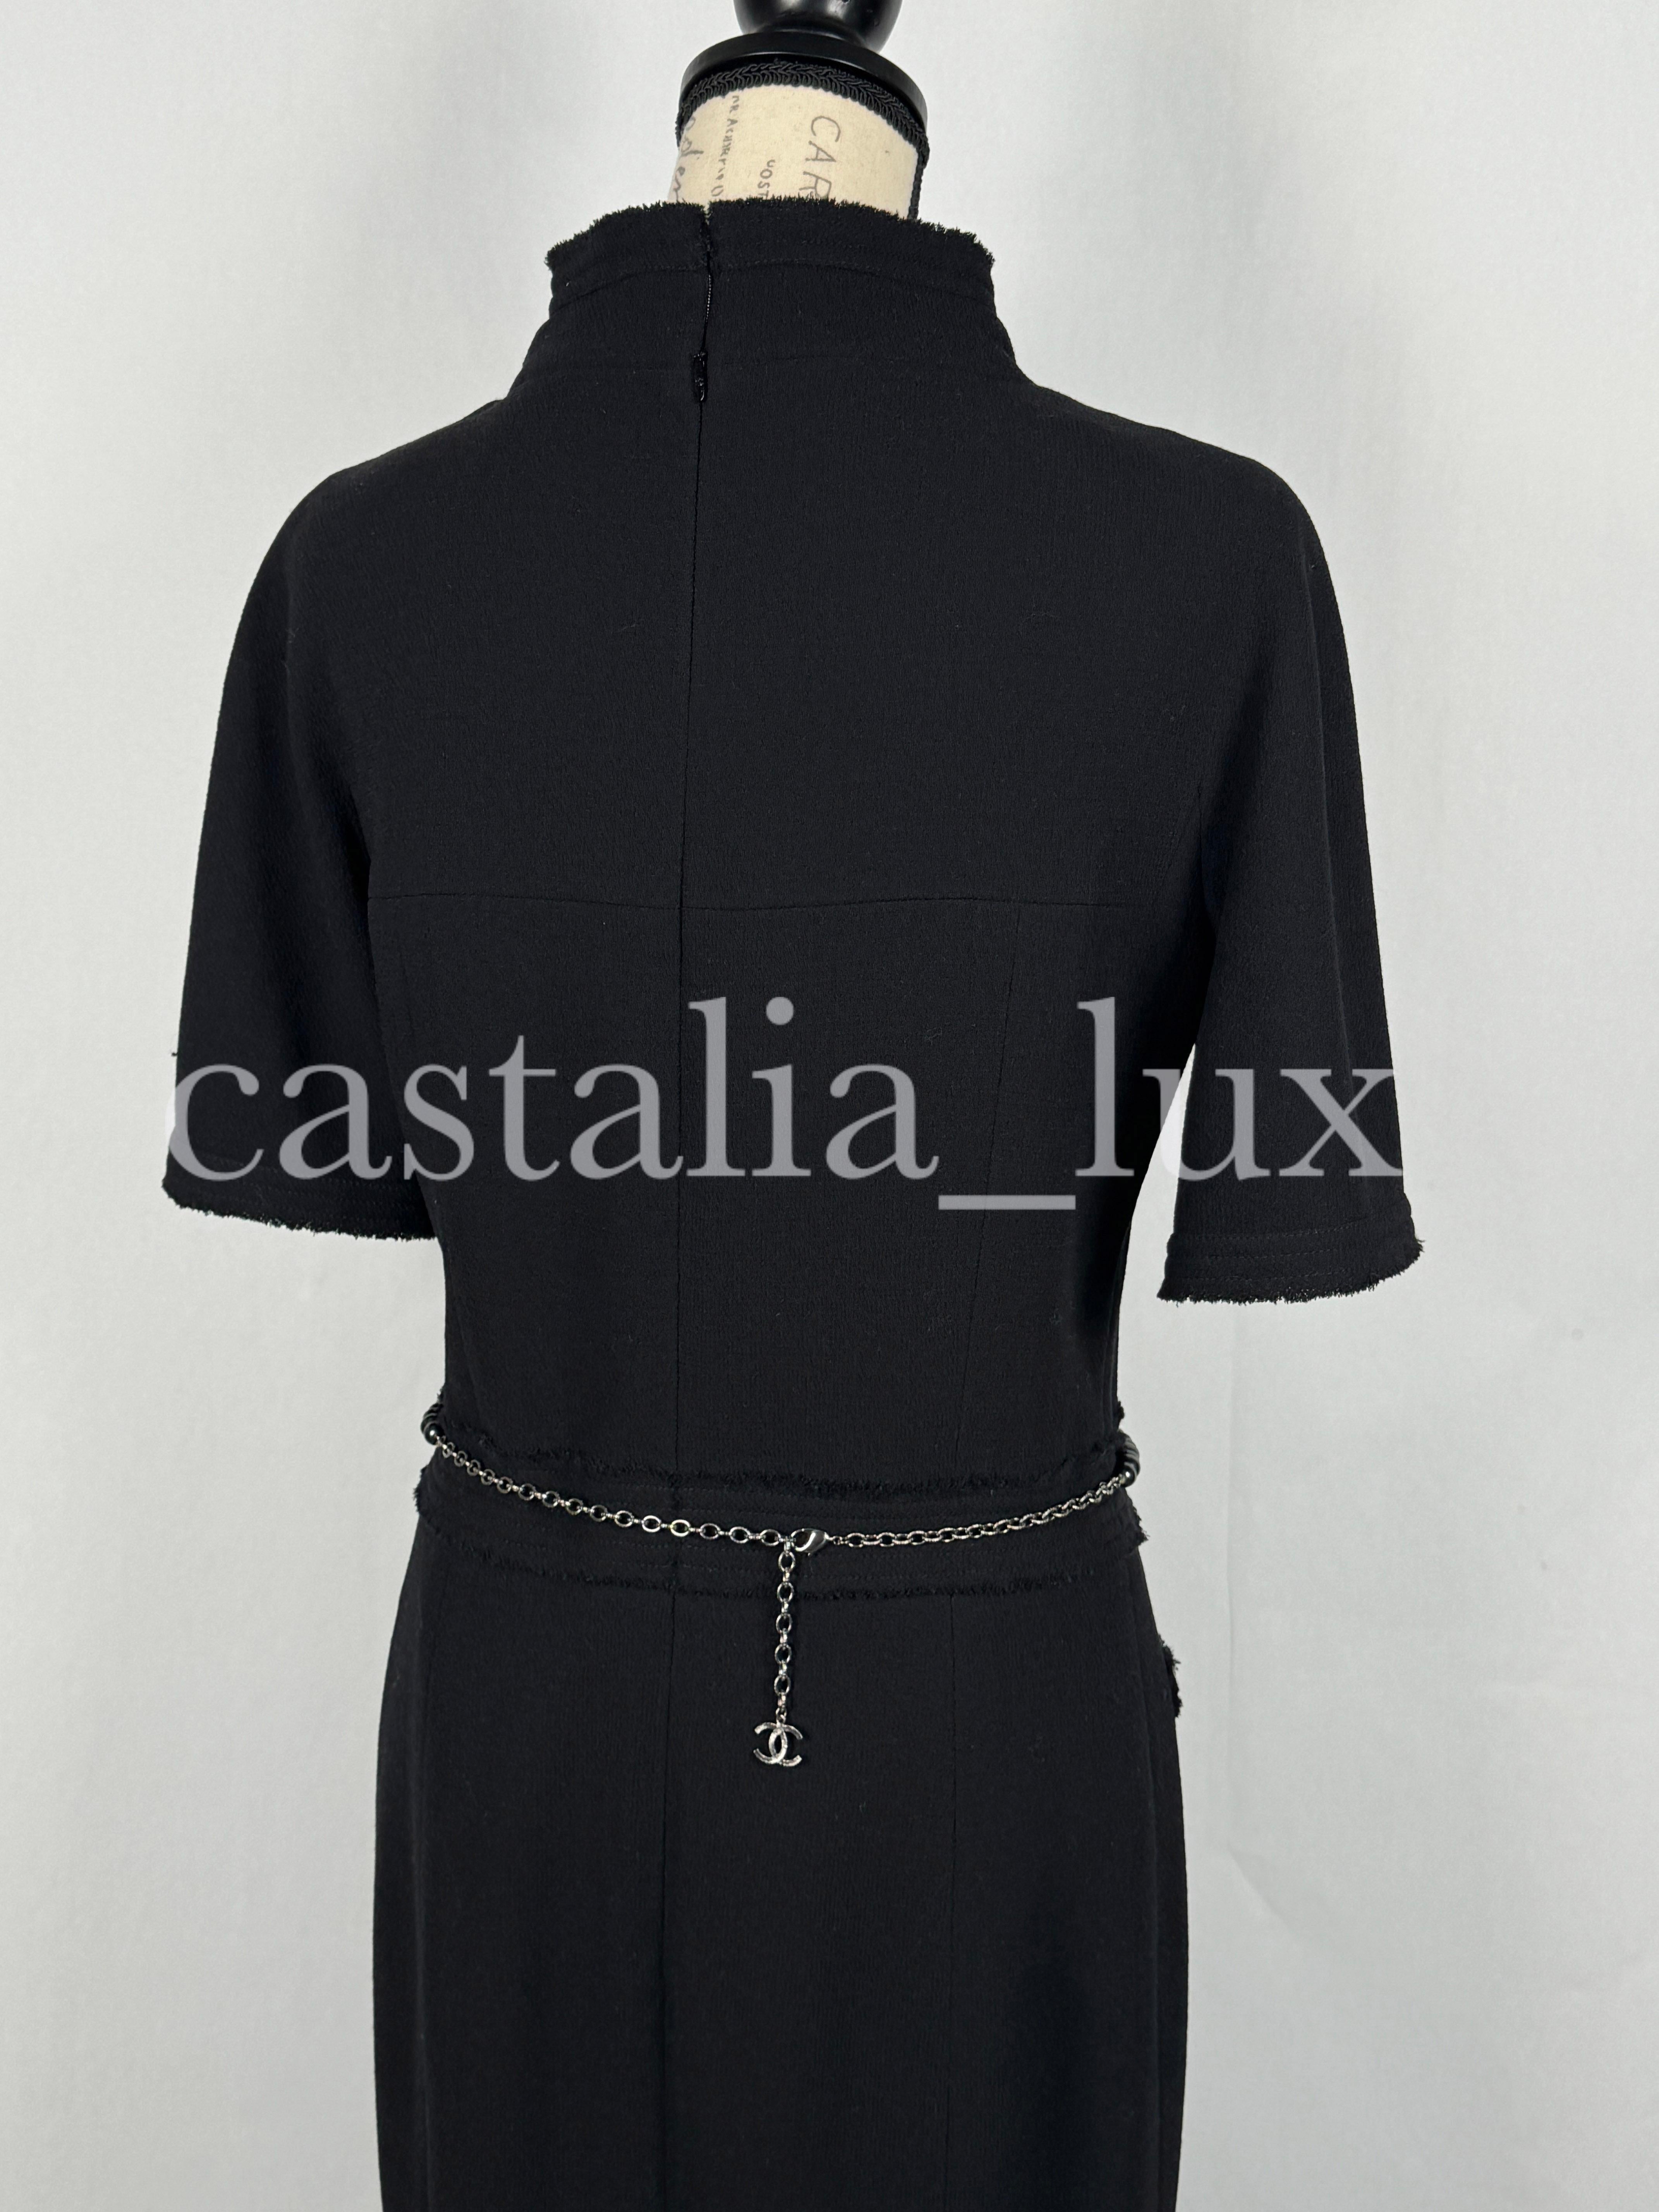 Chanel New CC Jewel Pearl Belt Black Tweed Dress For Sale 11